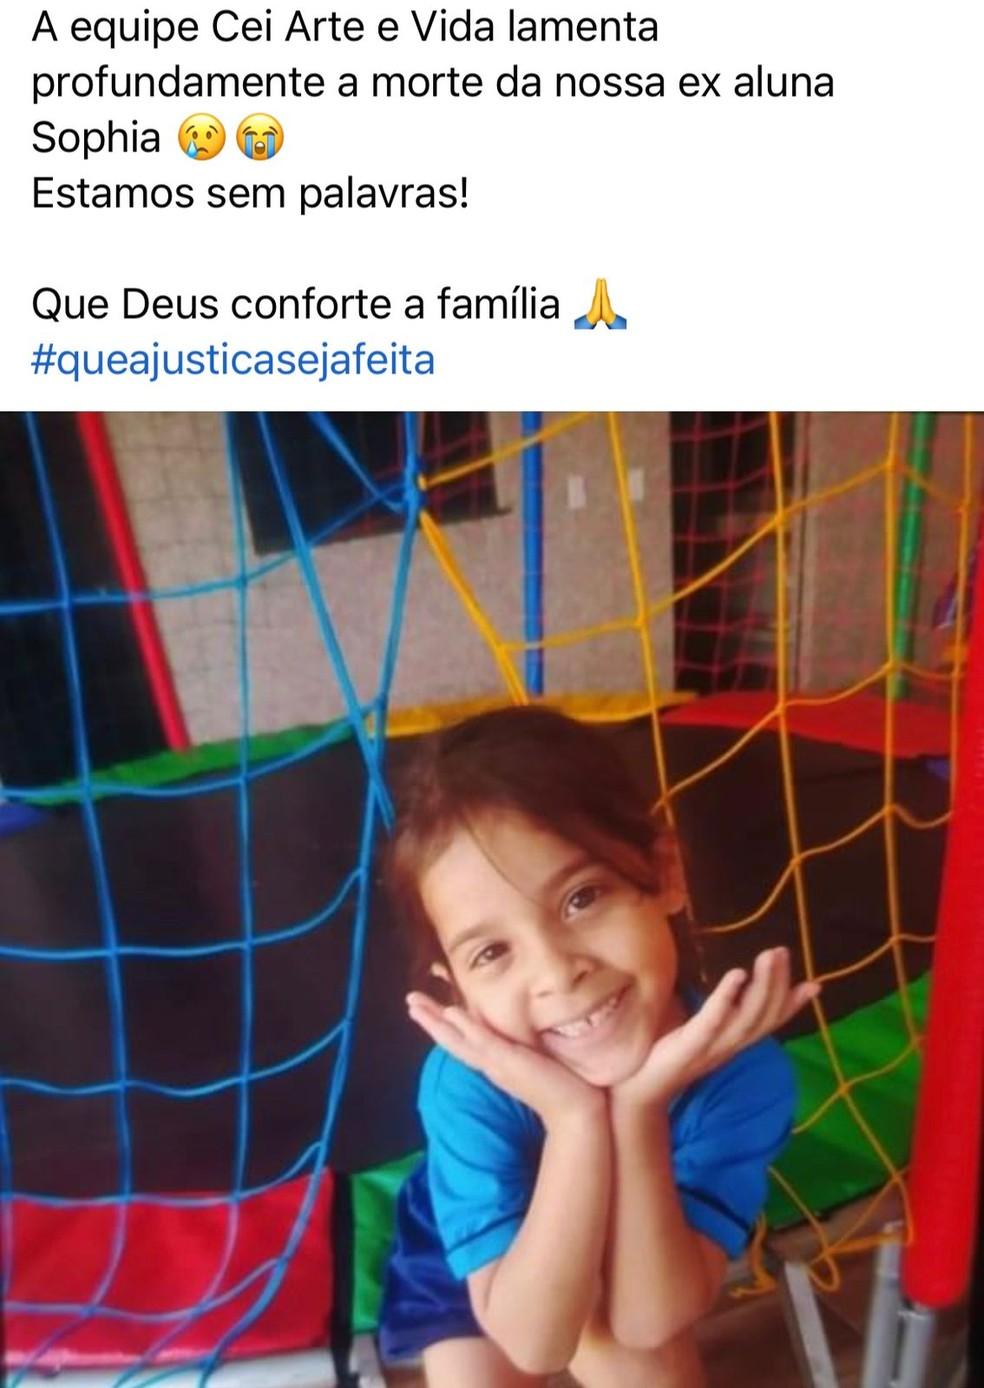 Escola lamentou a morte da menina nas redes sociais Foto Redes sociaisReproduo